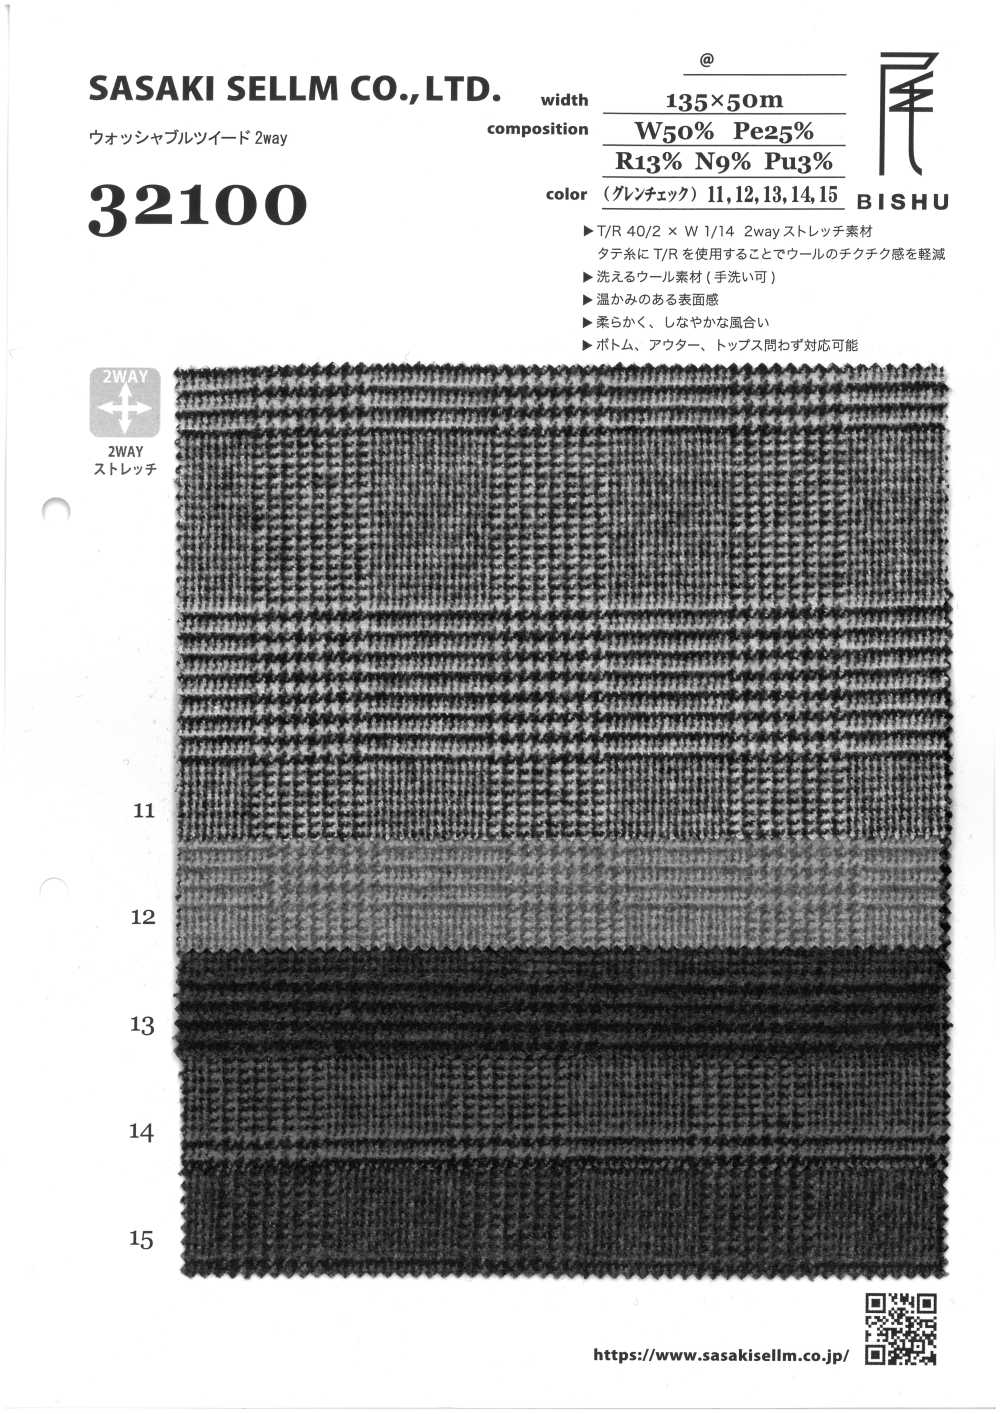 32100-10 Waschbarer Tweed 2WAY Glen Check[Textilgewebe] SASAKISELLM